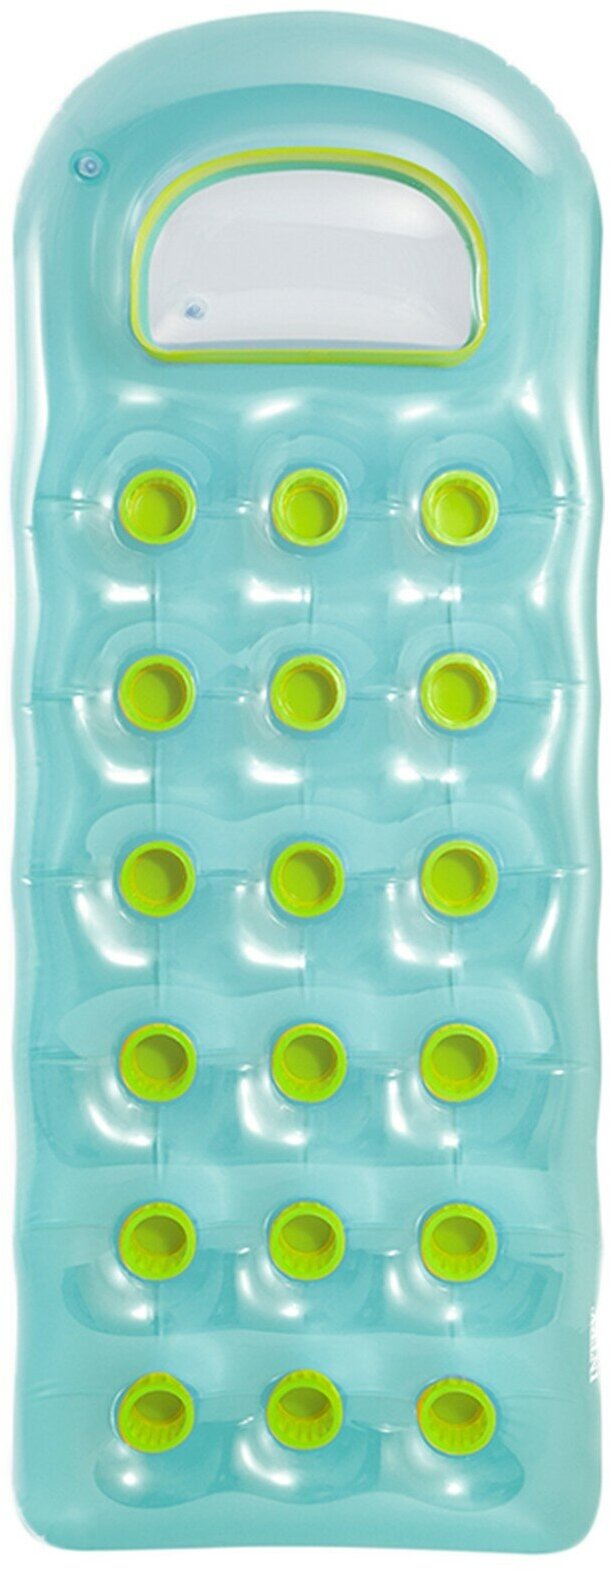 Матрас для плавания «Расплавленный лёд», 188 х 71 см, цвета МИКС, INTEX